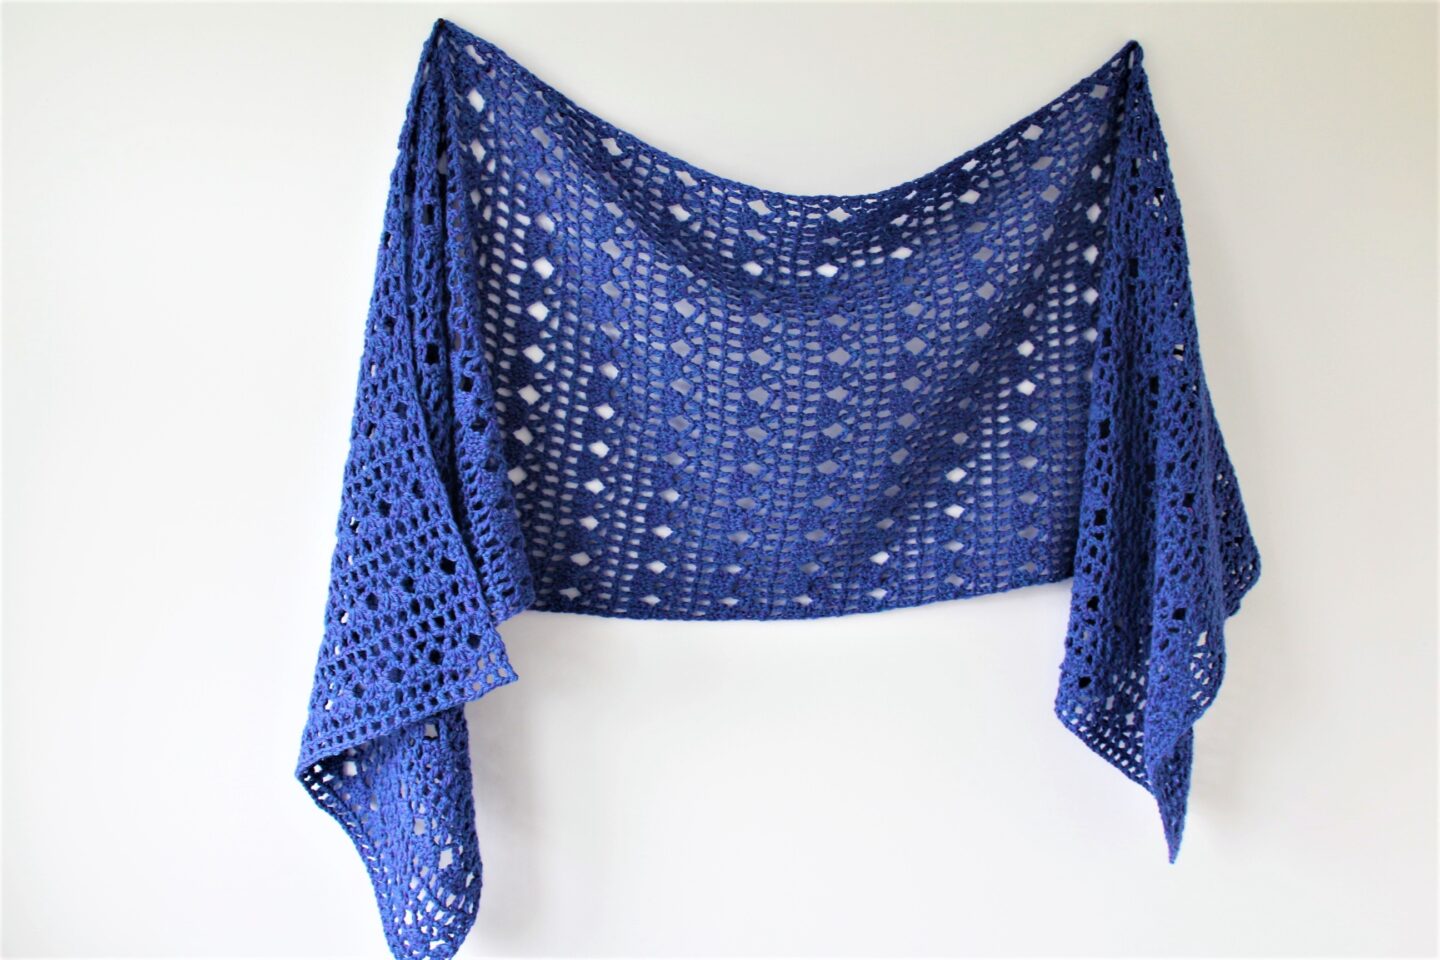 Free Shawl Crochet Pattern and Video